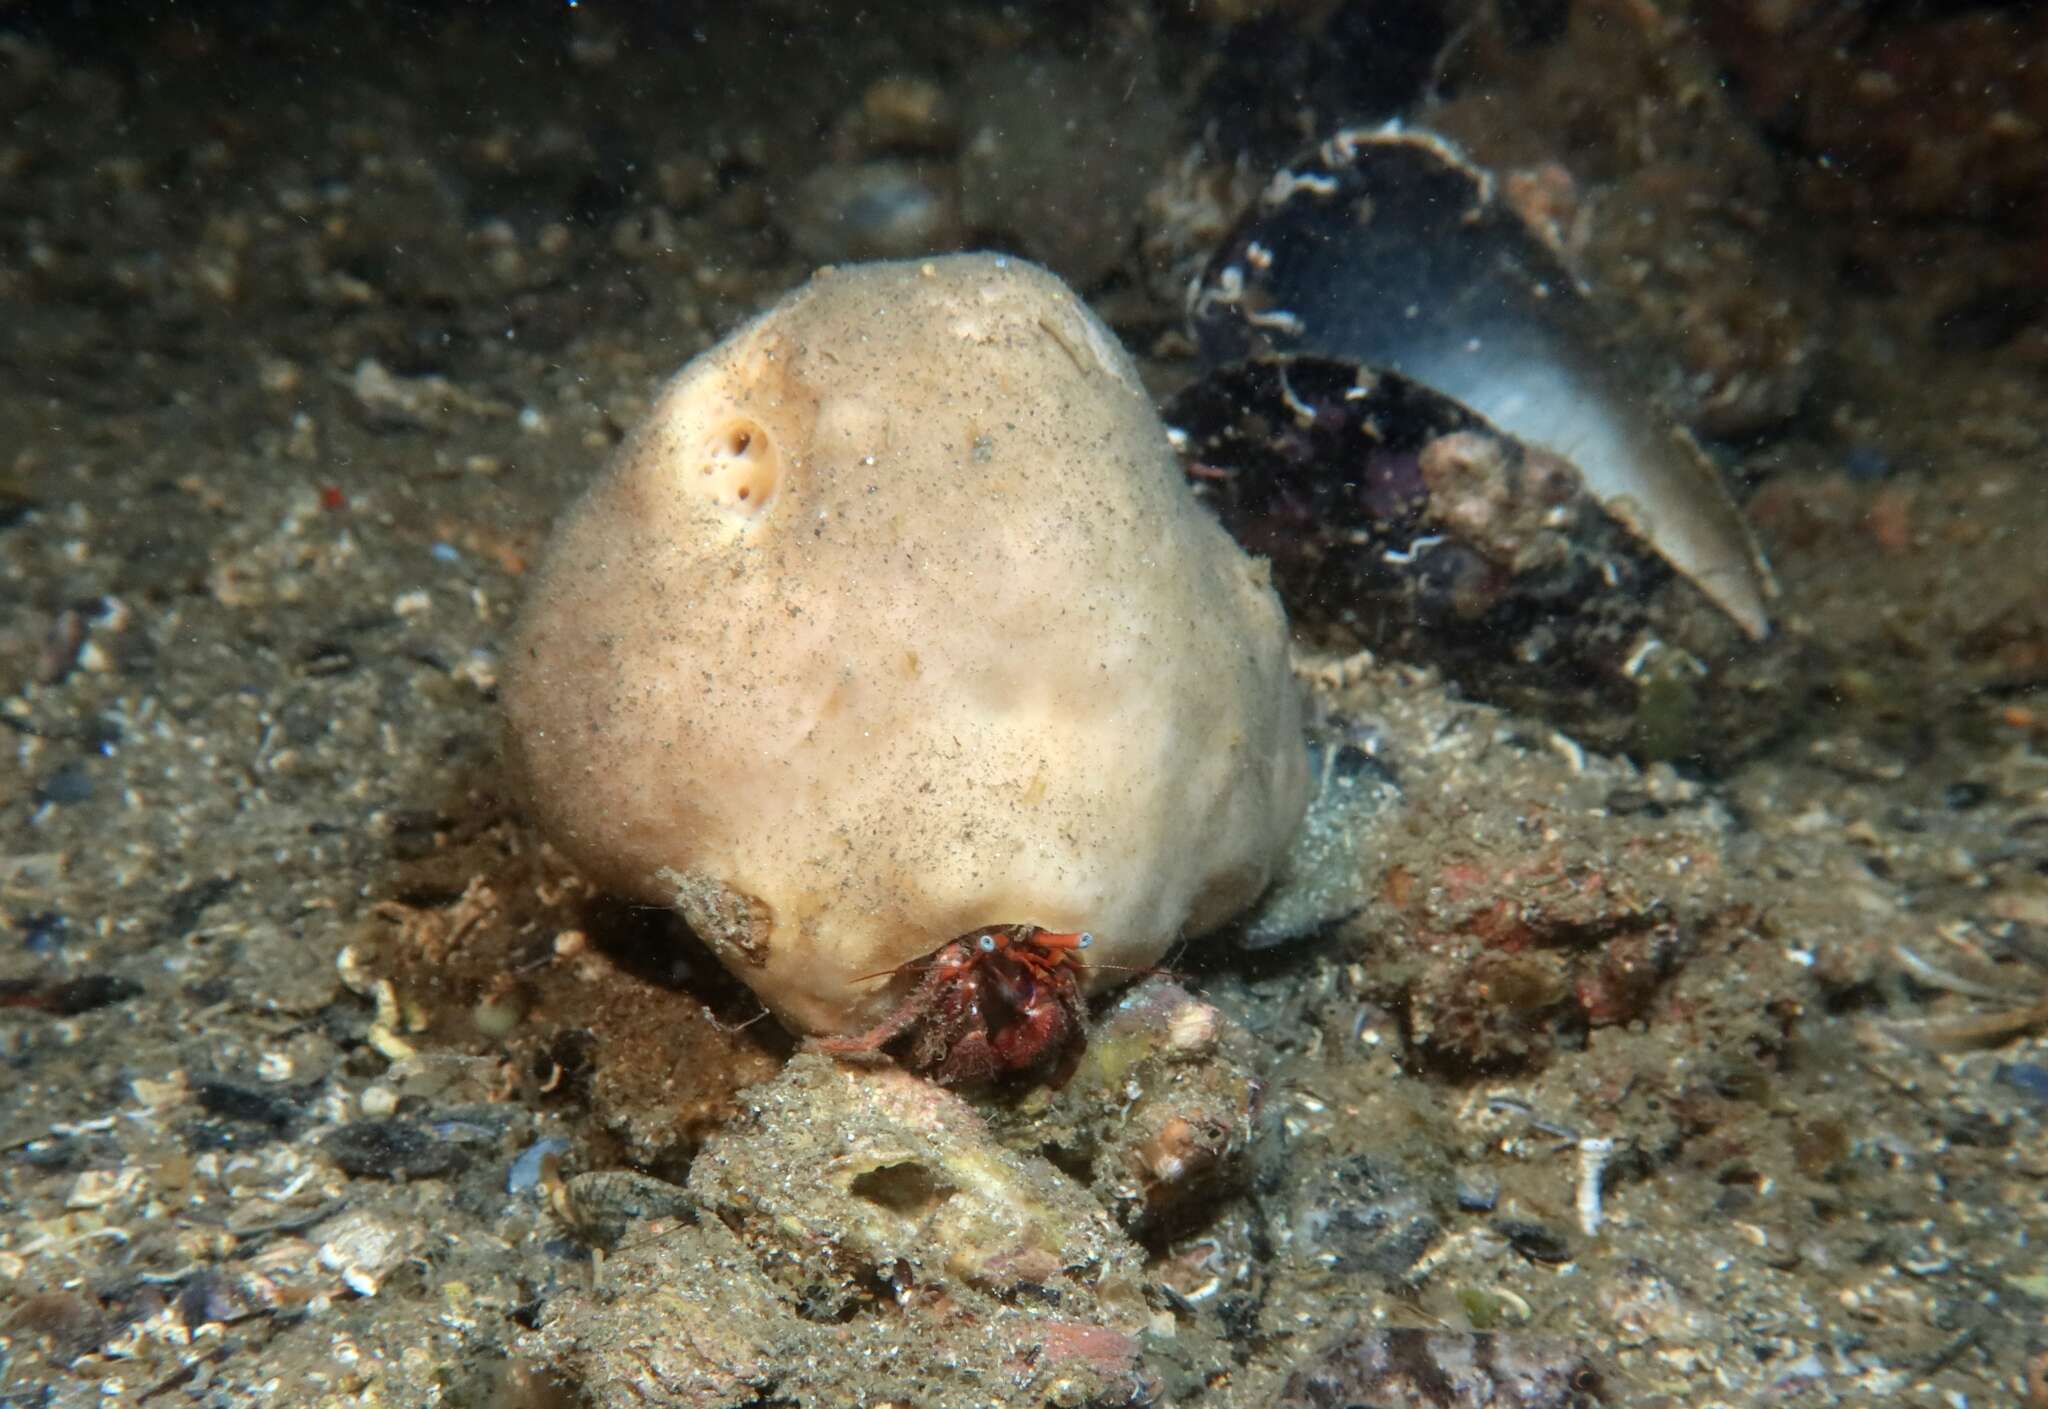 Image of hermit crab sponge